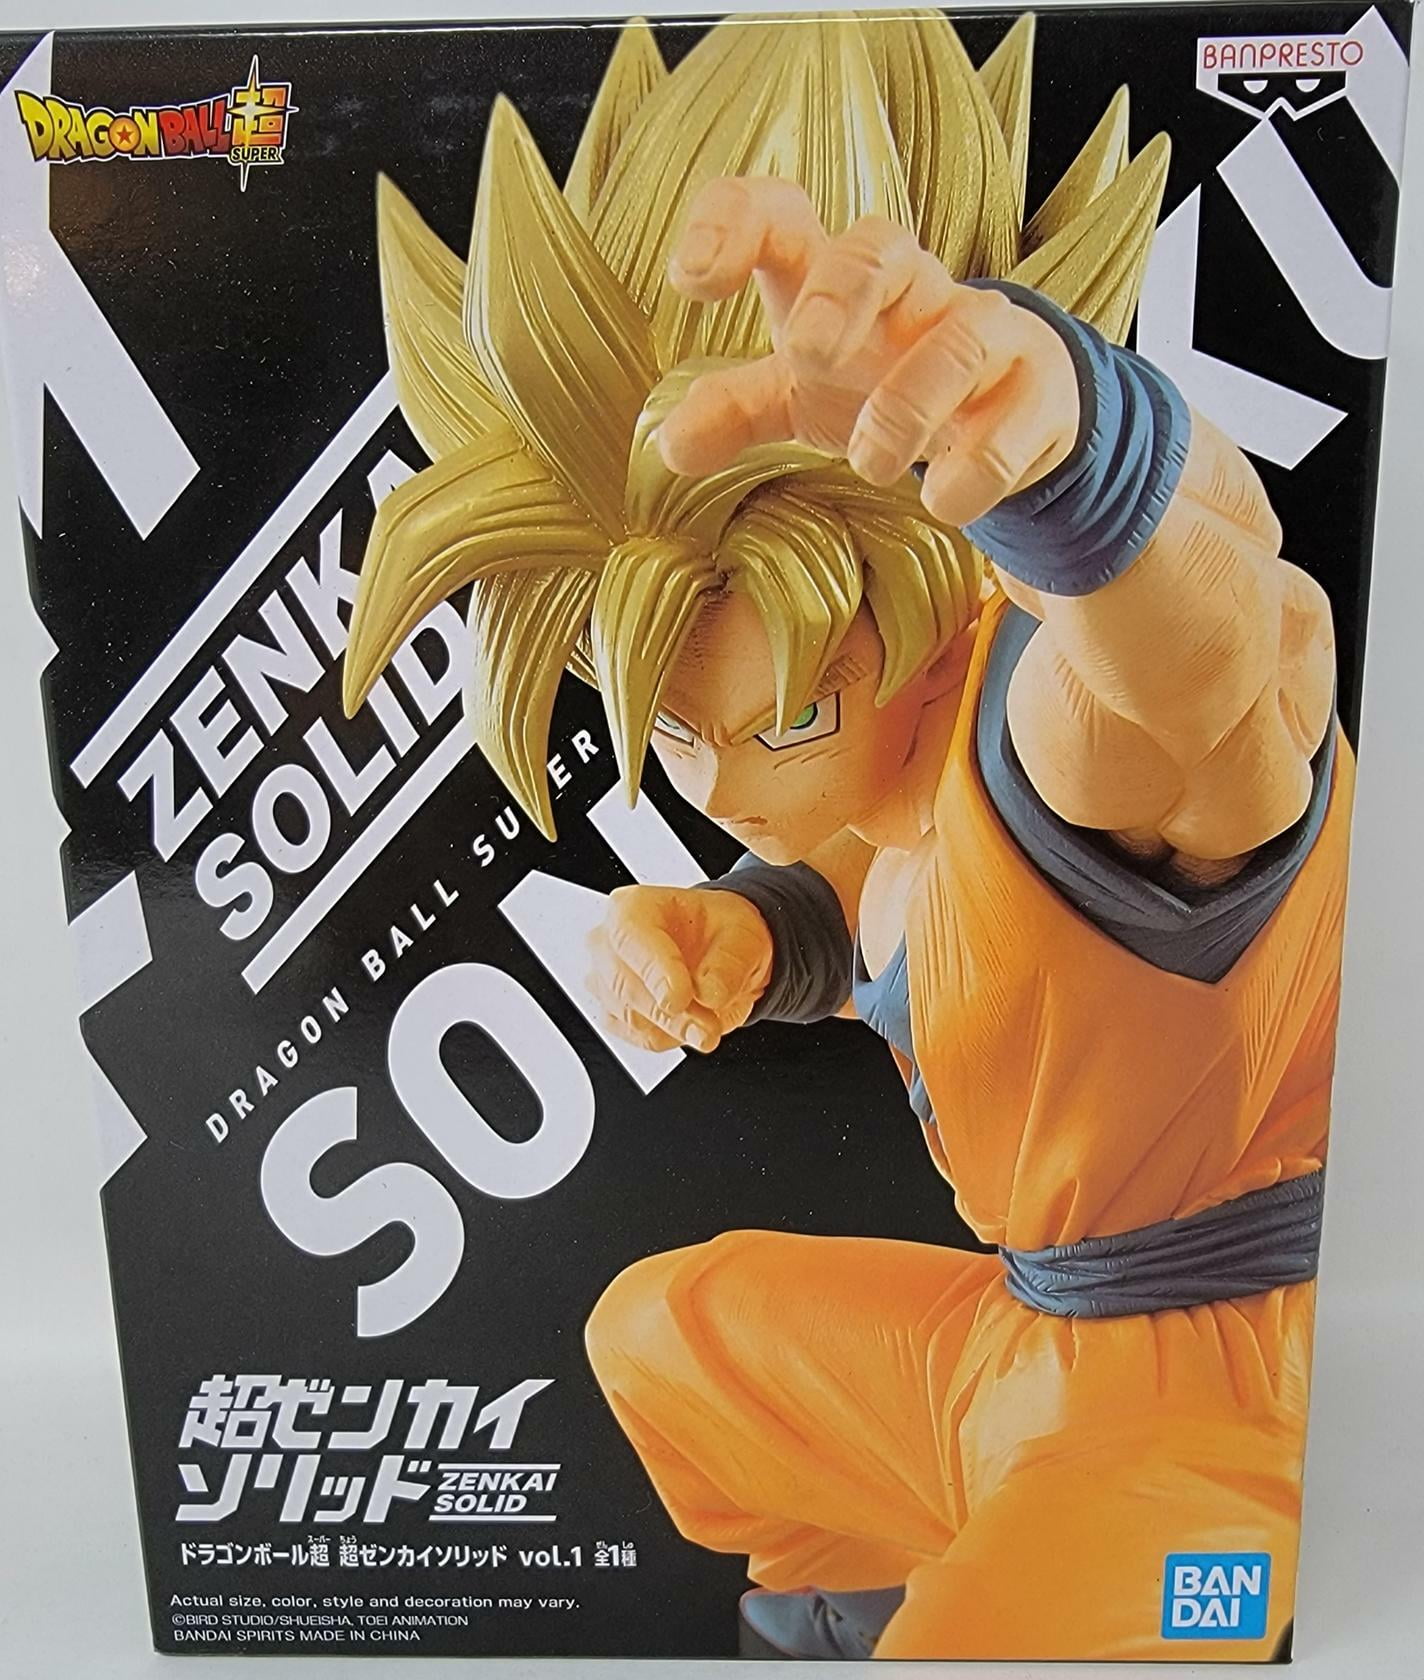 Figurine - Dragon Ball Super - Son Goku Match Makers - Objets à  collectionner Cinéma et Séries